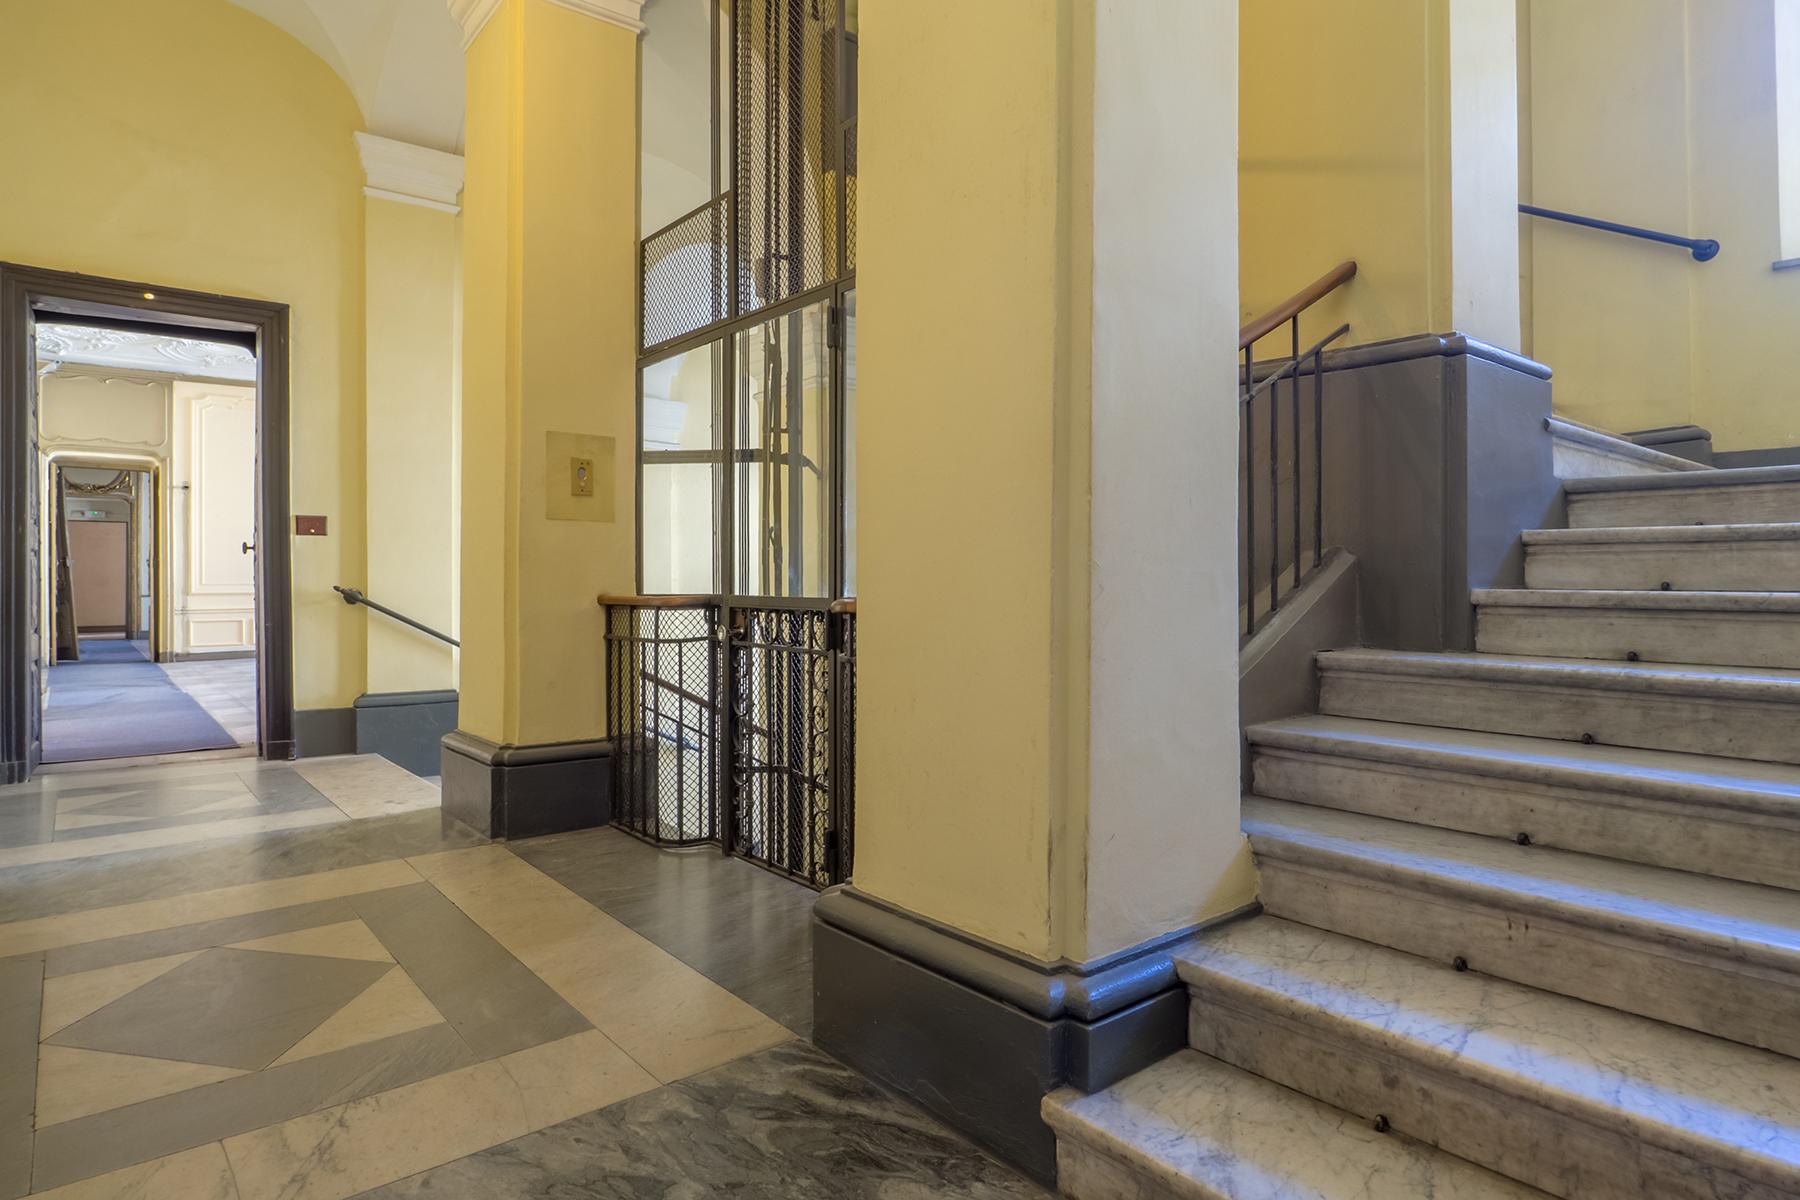 Ufficio di alta rappresentanza nel centro storico di Torino - 21